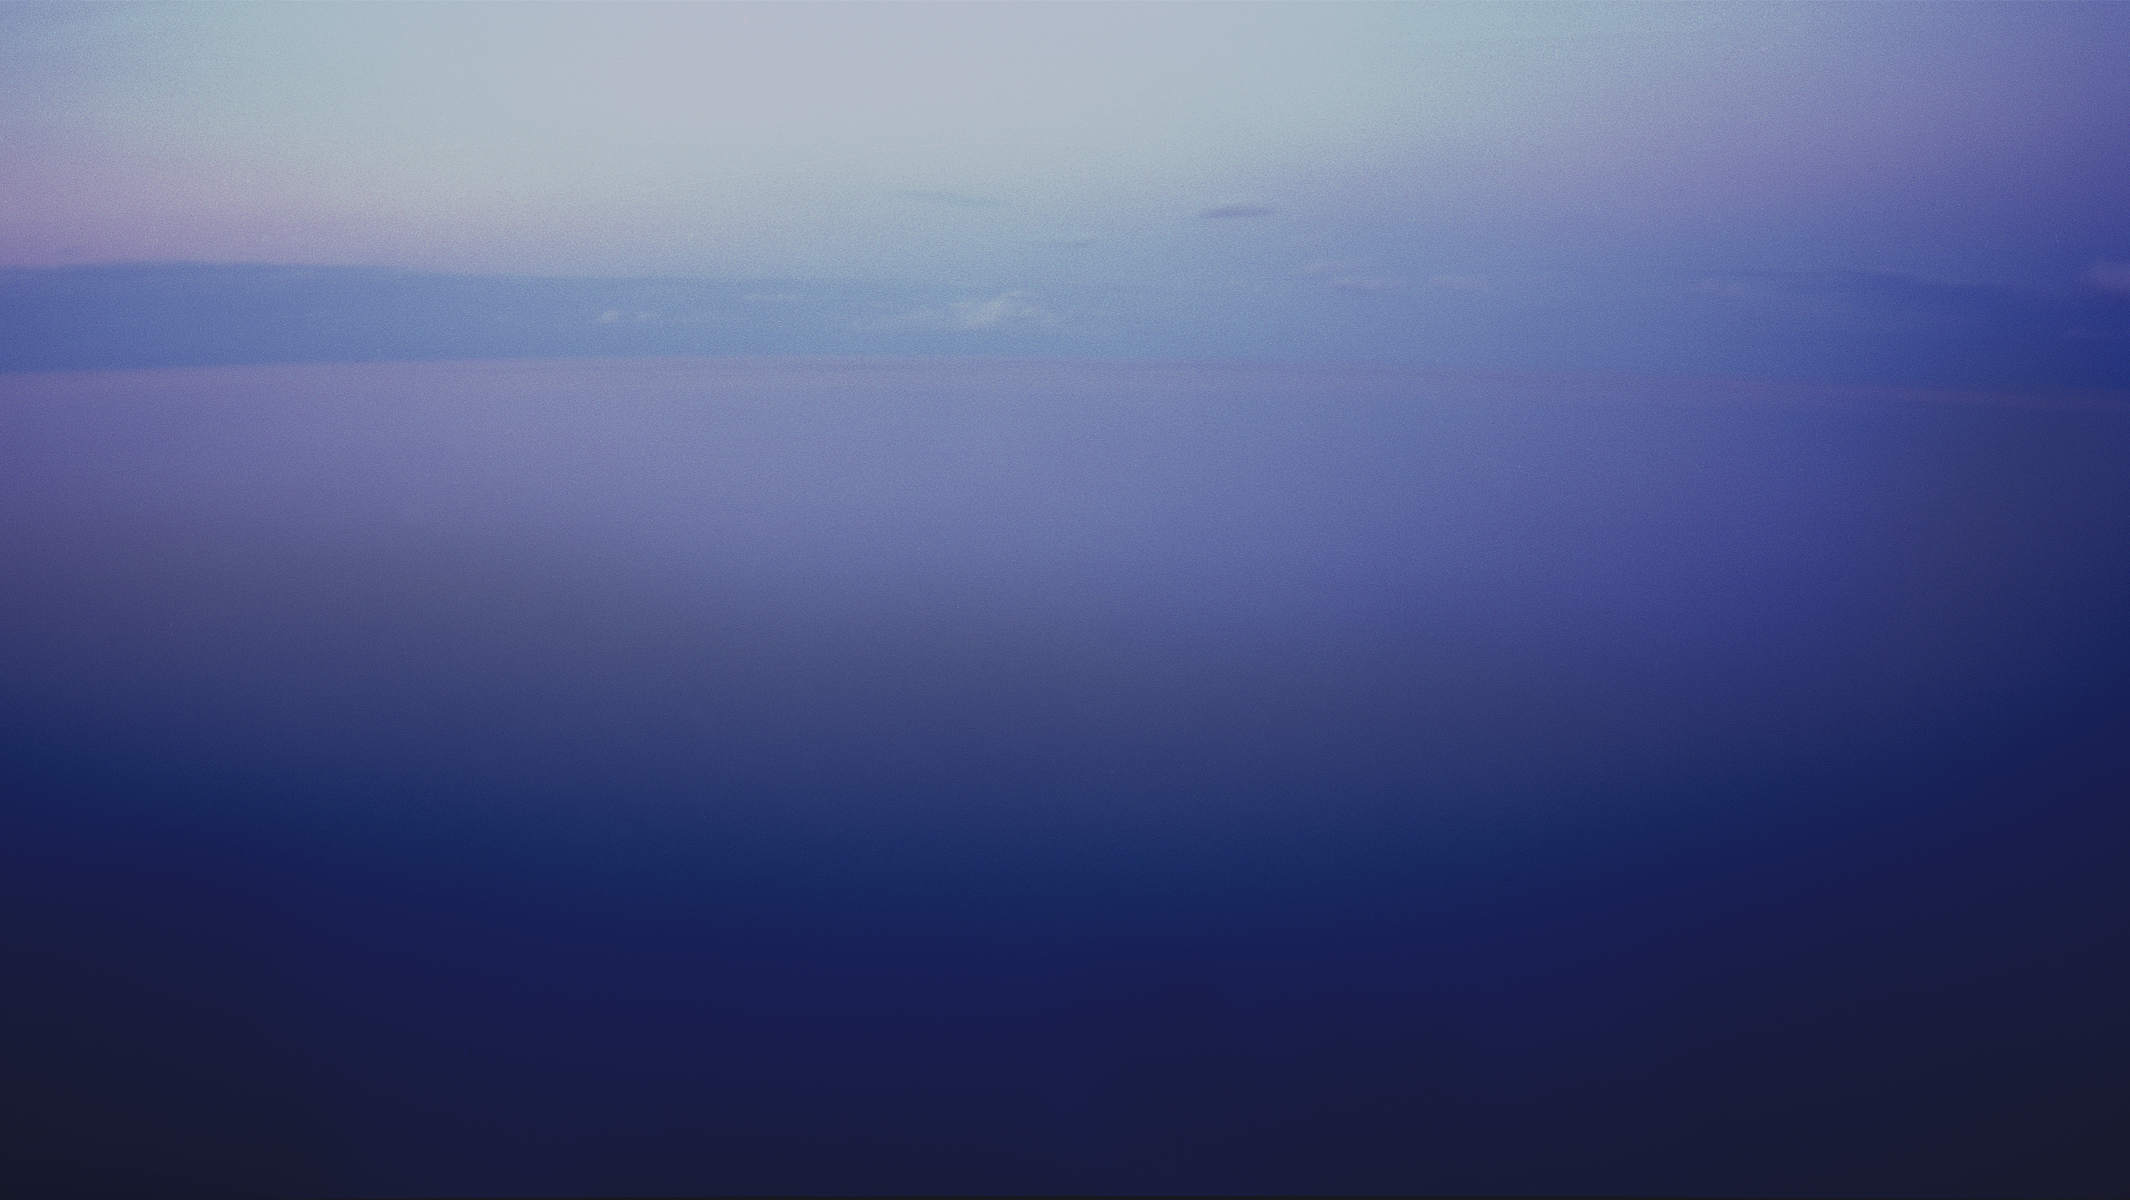 Abenddämmerung über dem Mittelmeer in blauen und violetten Farben. © Martin Geier